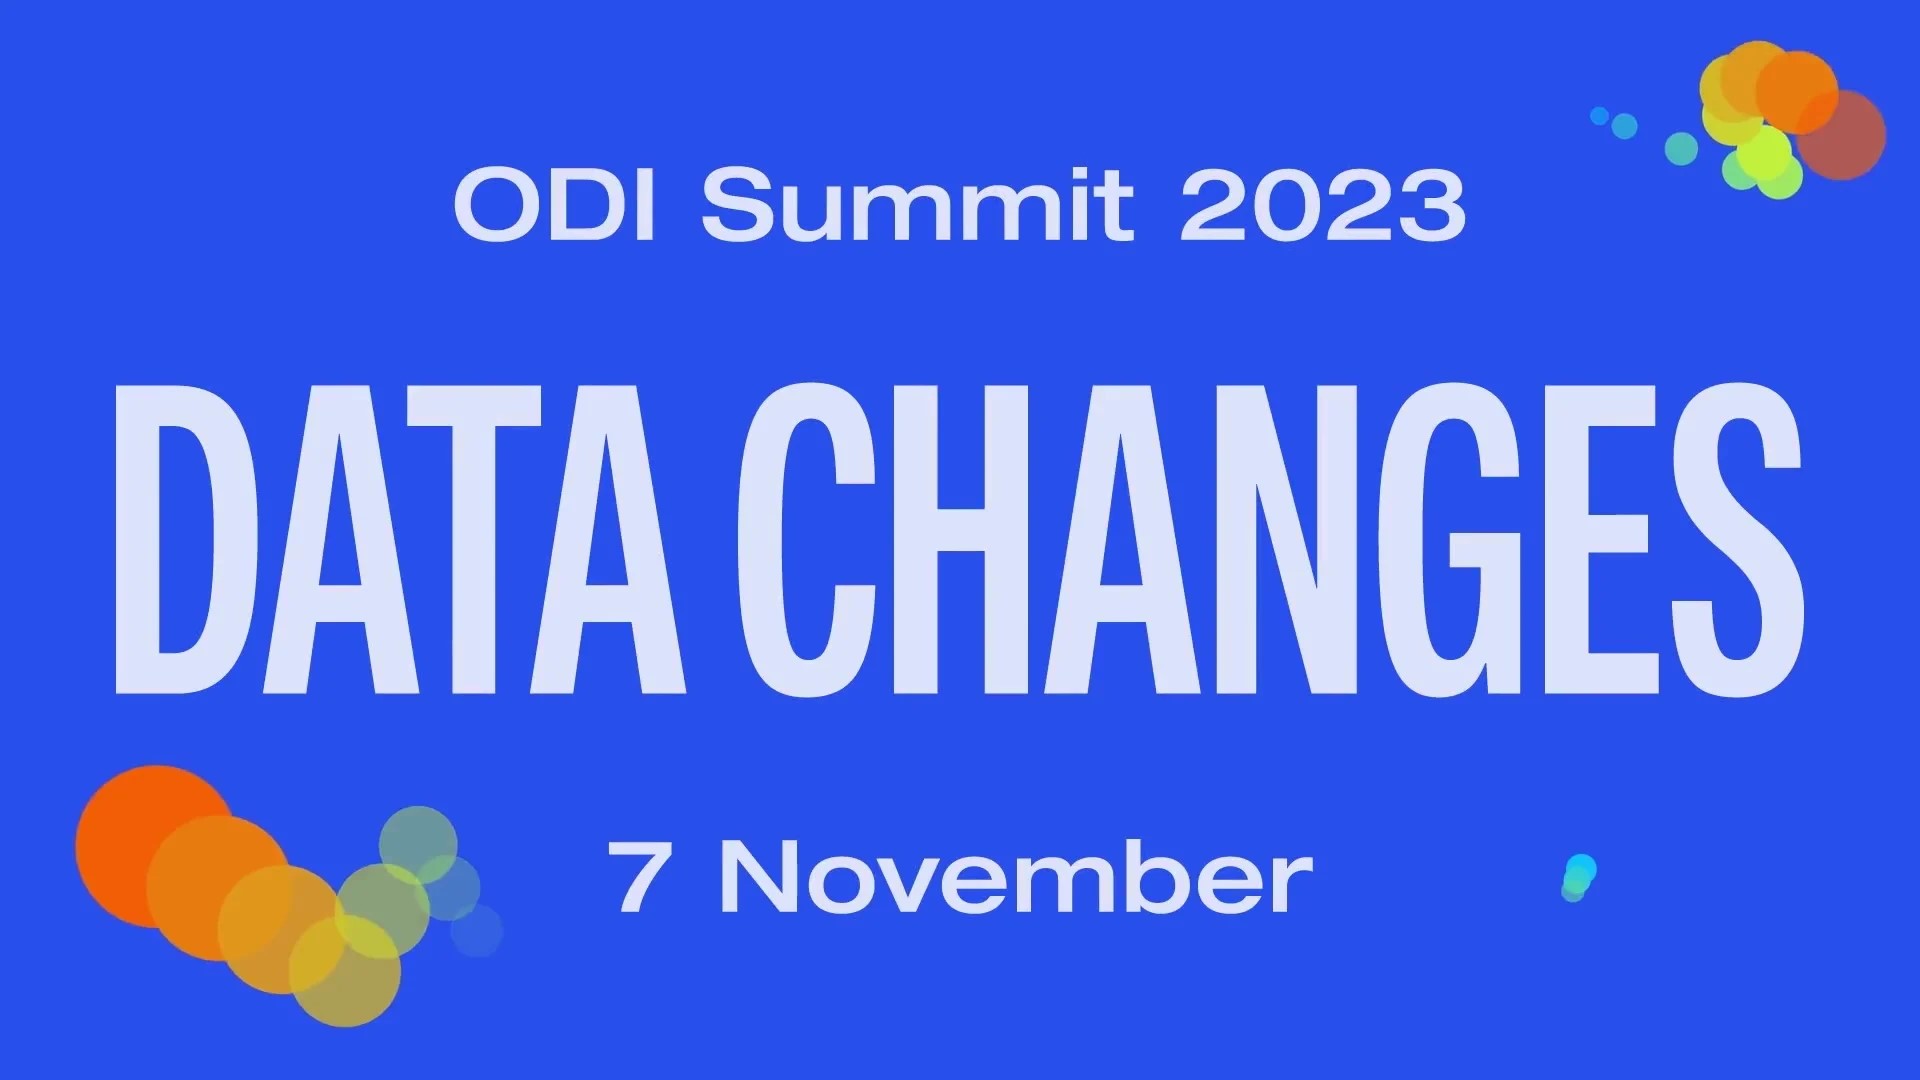 ODI Summit